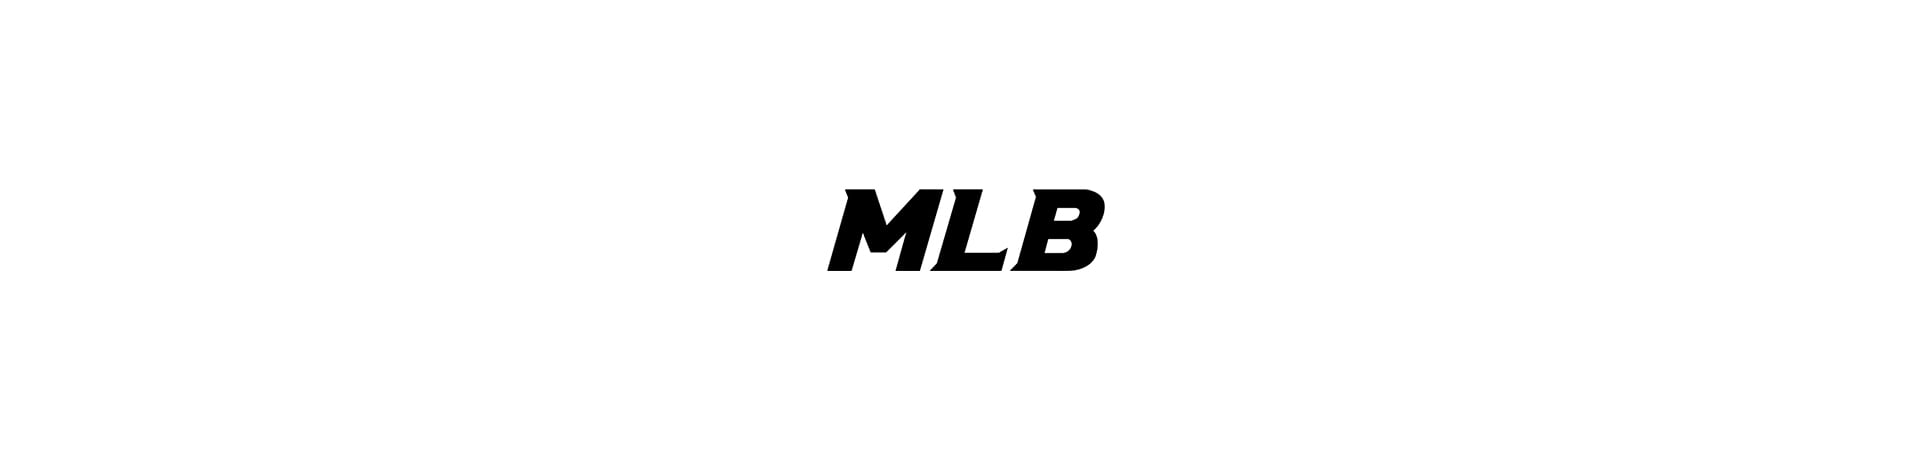 Balo MLB Chính Hãng